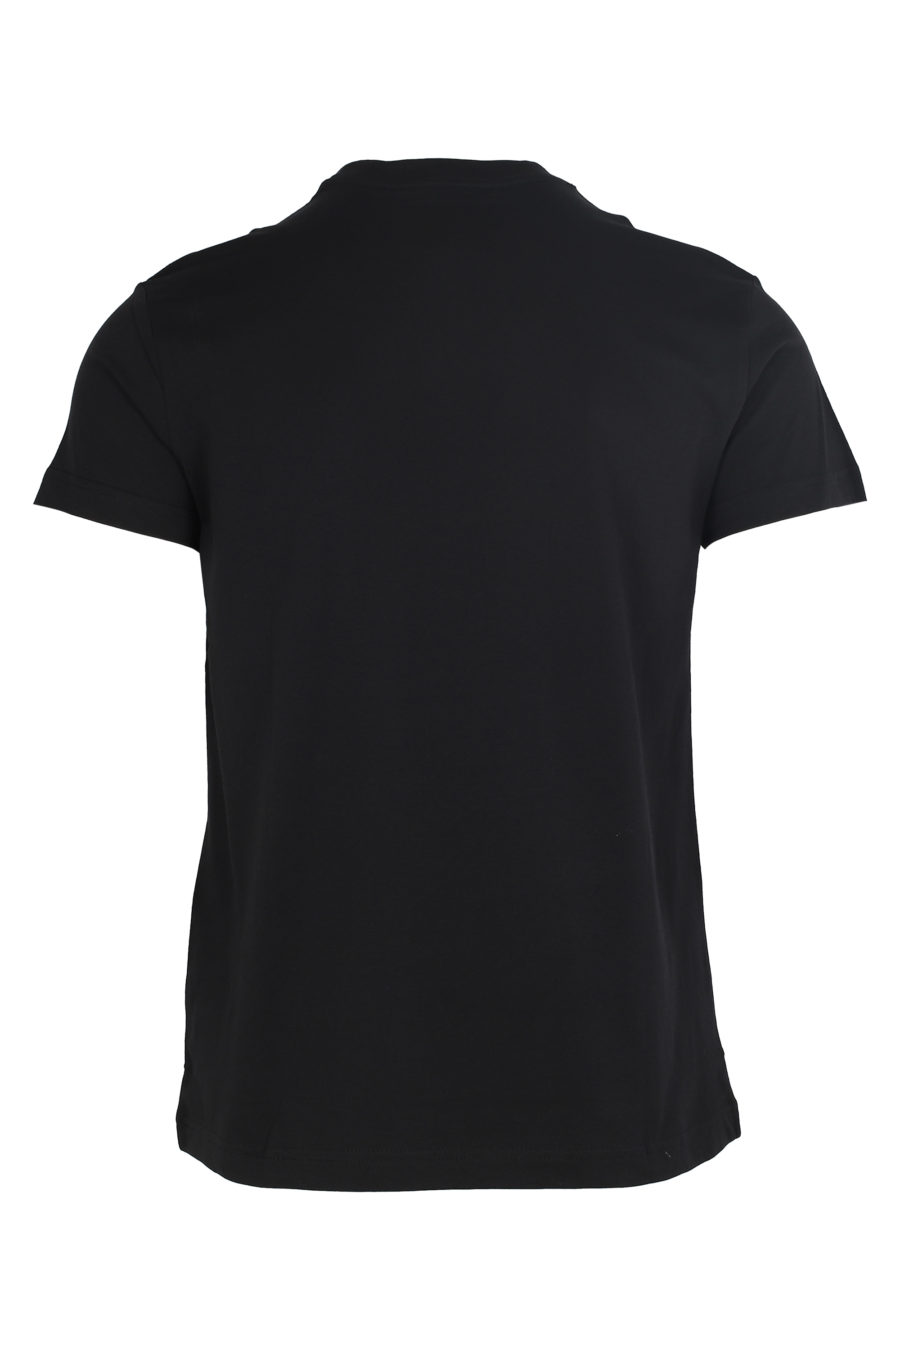 Camiseta negra con logo gris engomado - IMG 5991